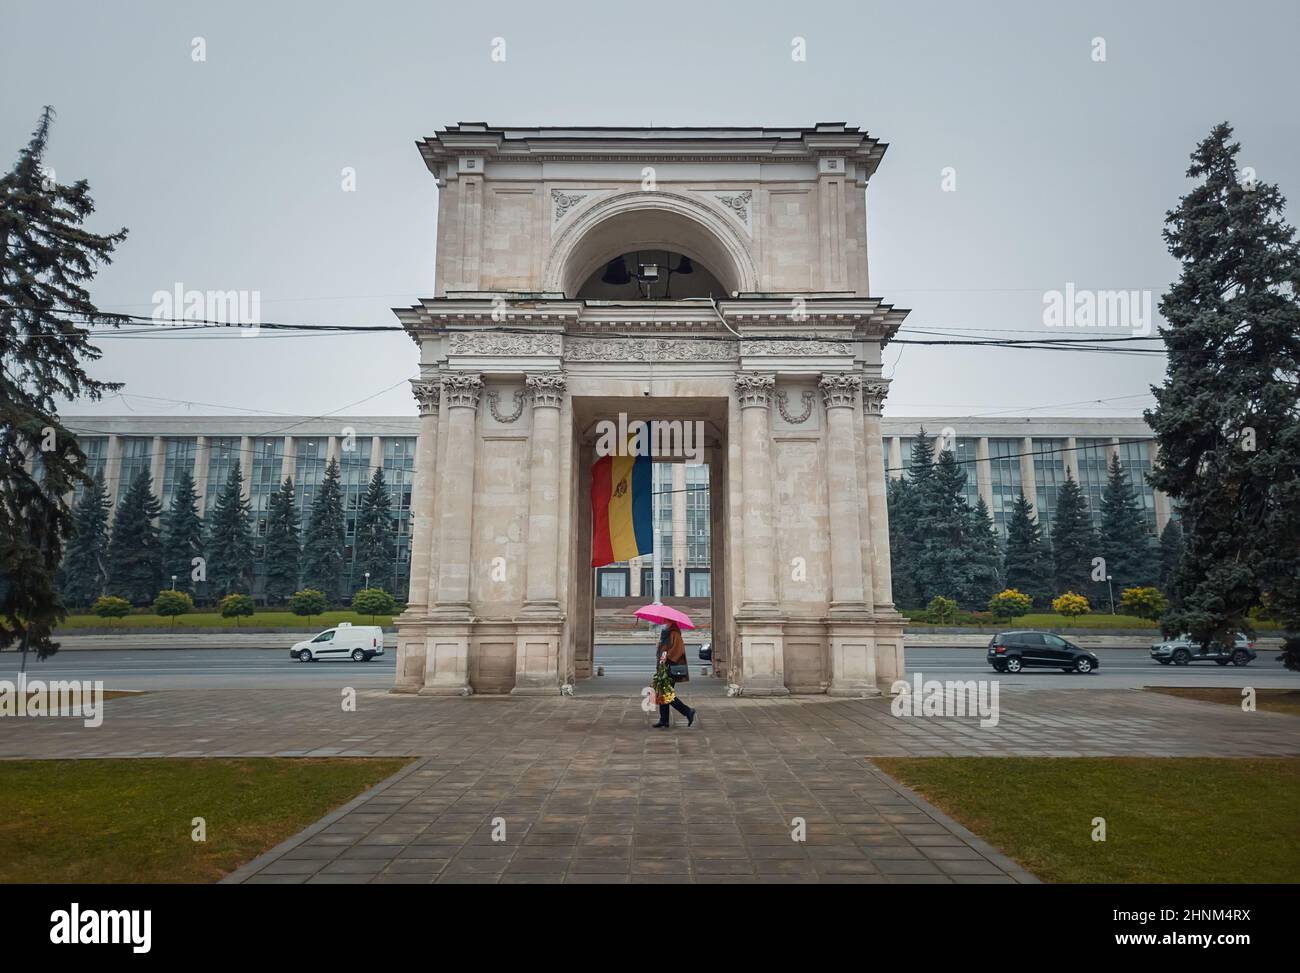 Arco trionfale di fronte al palazzo del governo, Chisinau, Moldavia. Monumenti storici della capitale. Foto Stock